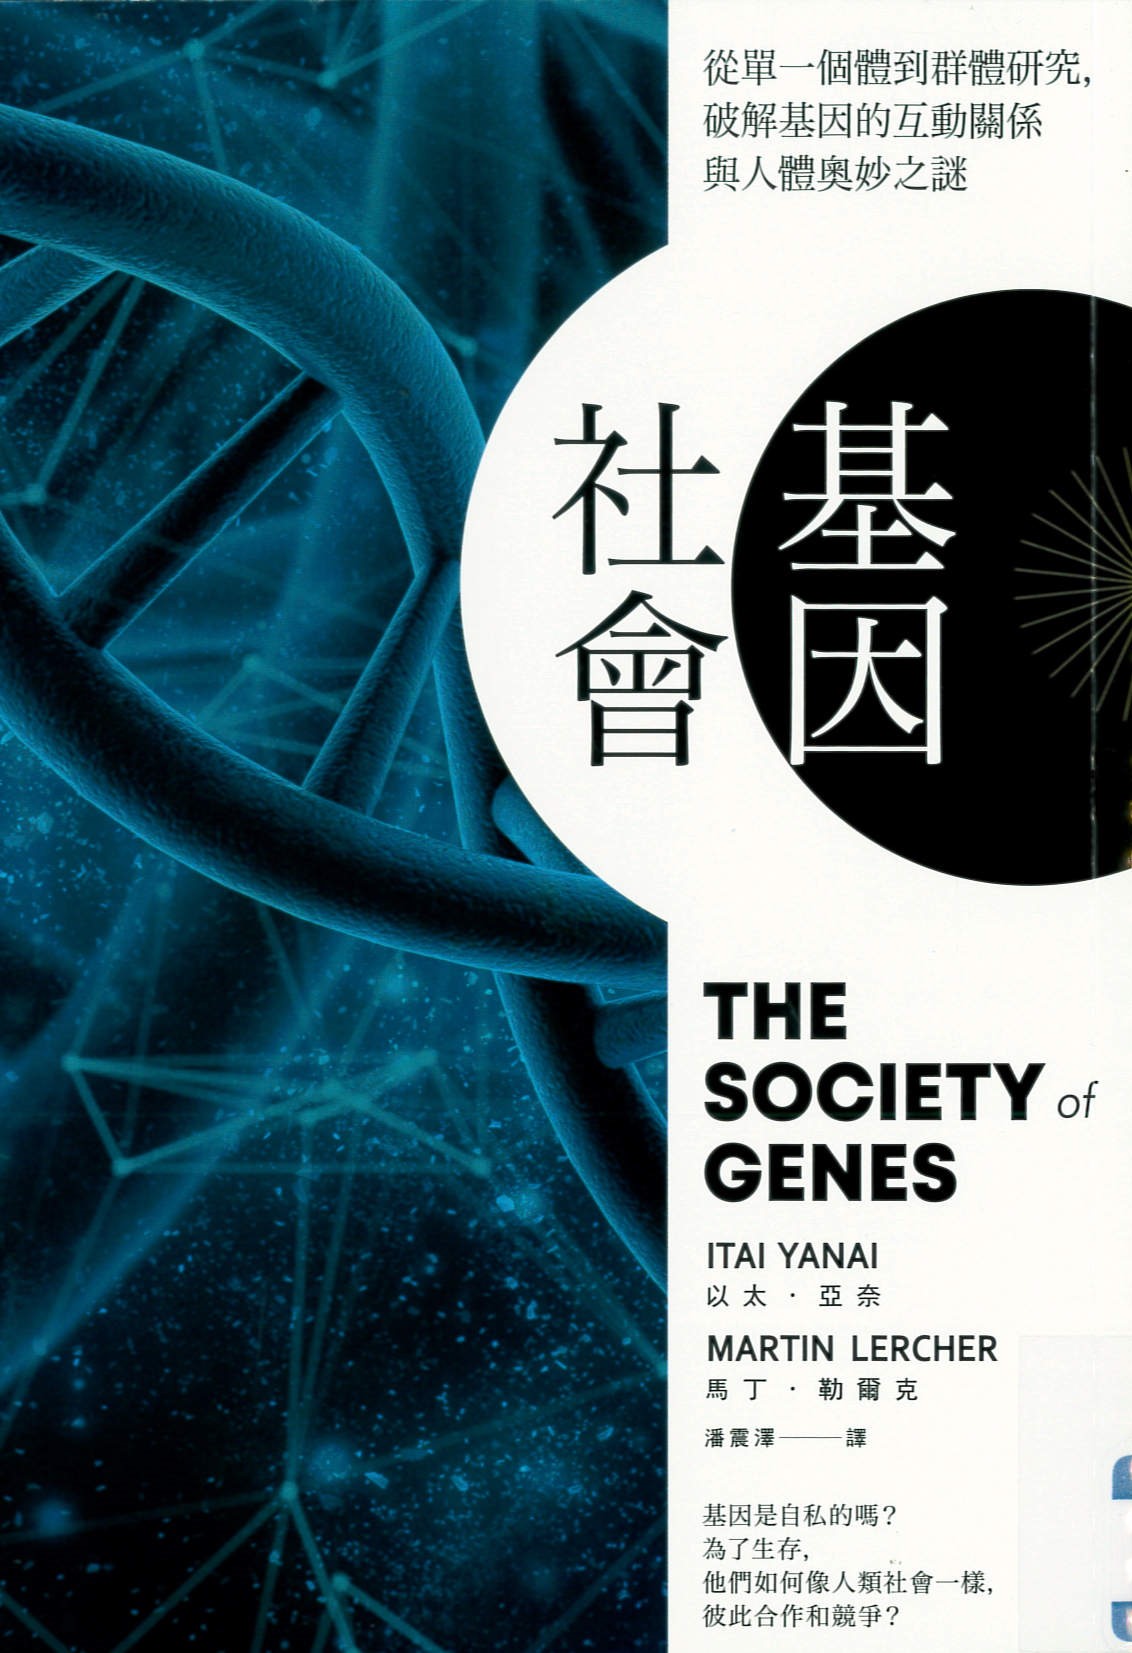 基因社會 : 從單一個體到群體研究,破解基因的互動關係與人體奧妙之謎 /